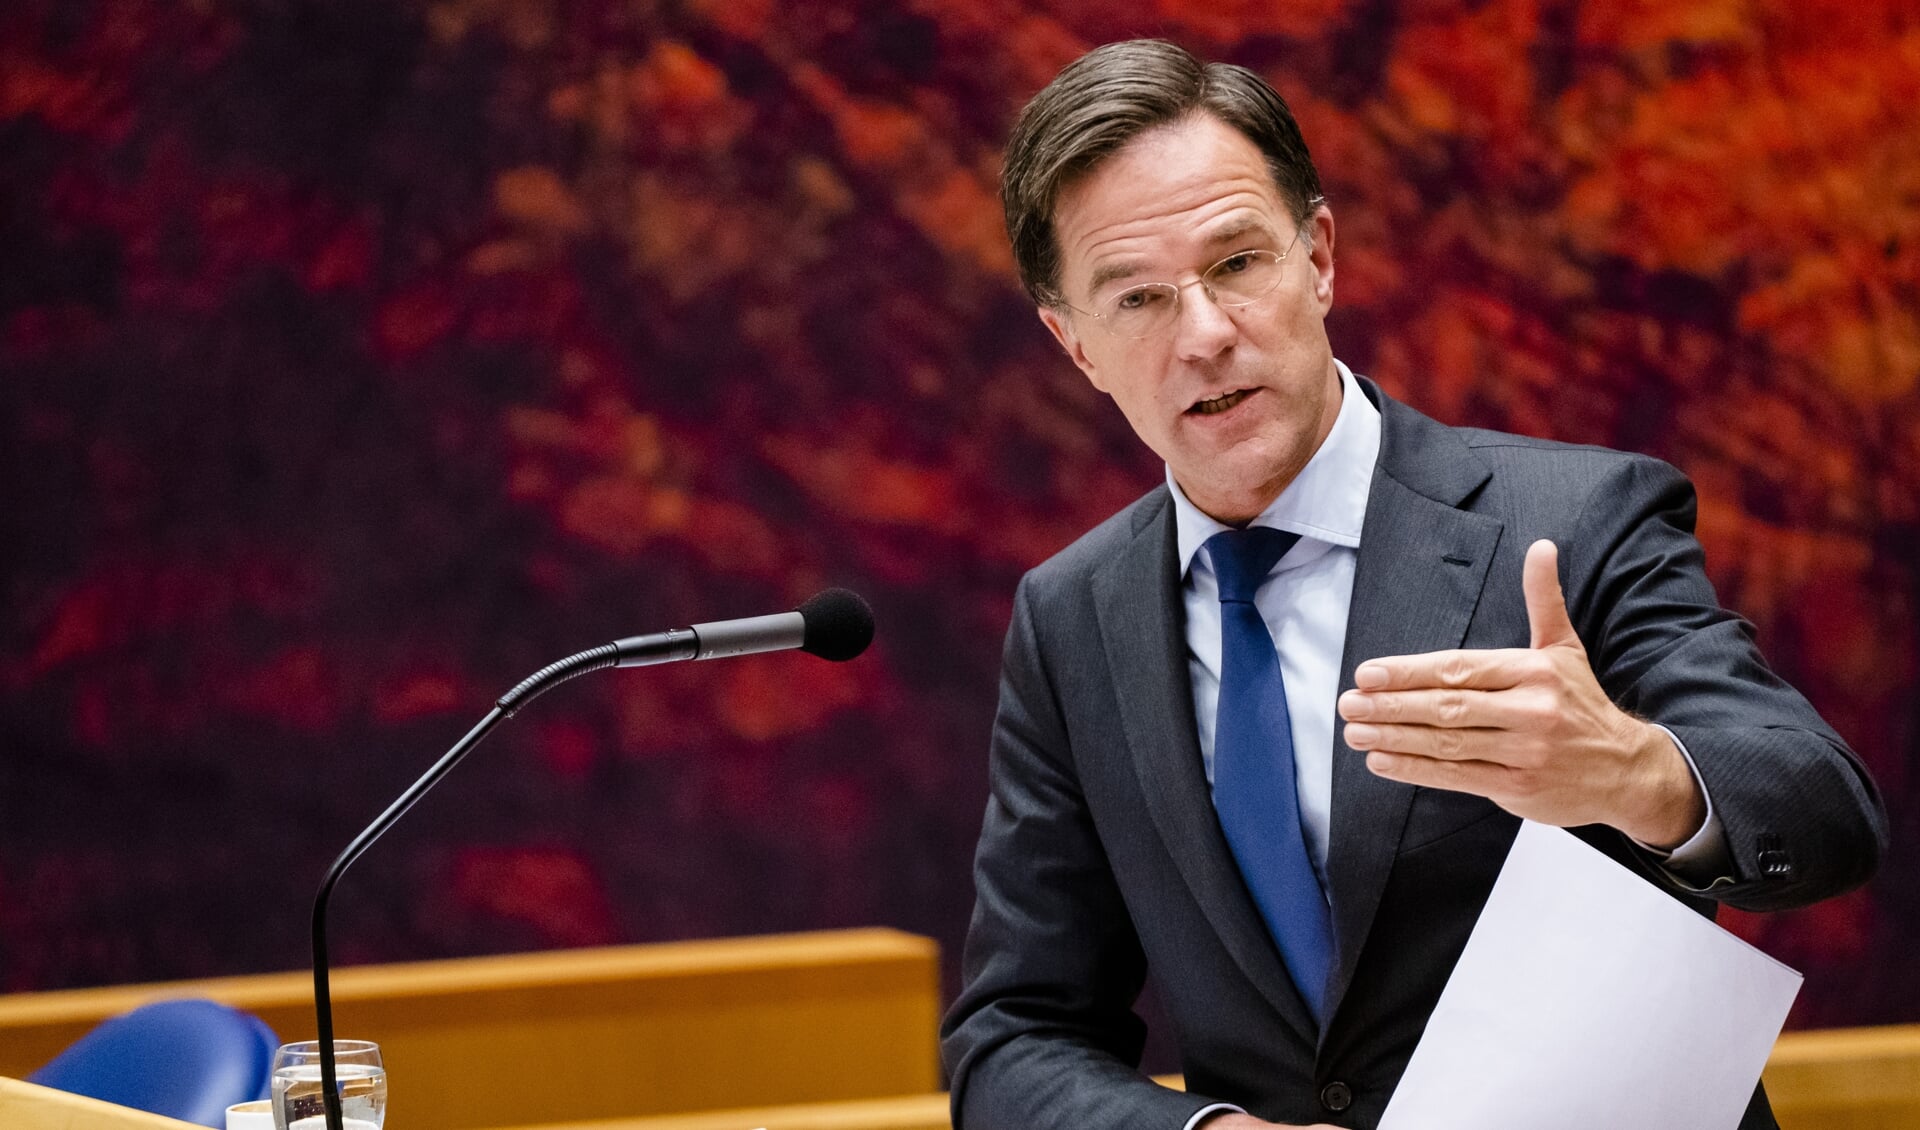 2020-11-04 19:40:22 DEN HAAG - Premier Mark Rutte tijdens het plenair debat in de Tweede Kamer over de ontwikkelingen rondom het coronavirus. ANP BART MAAT